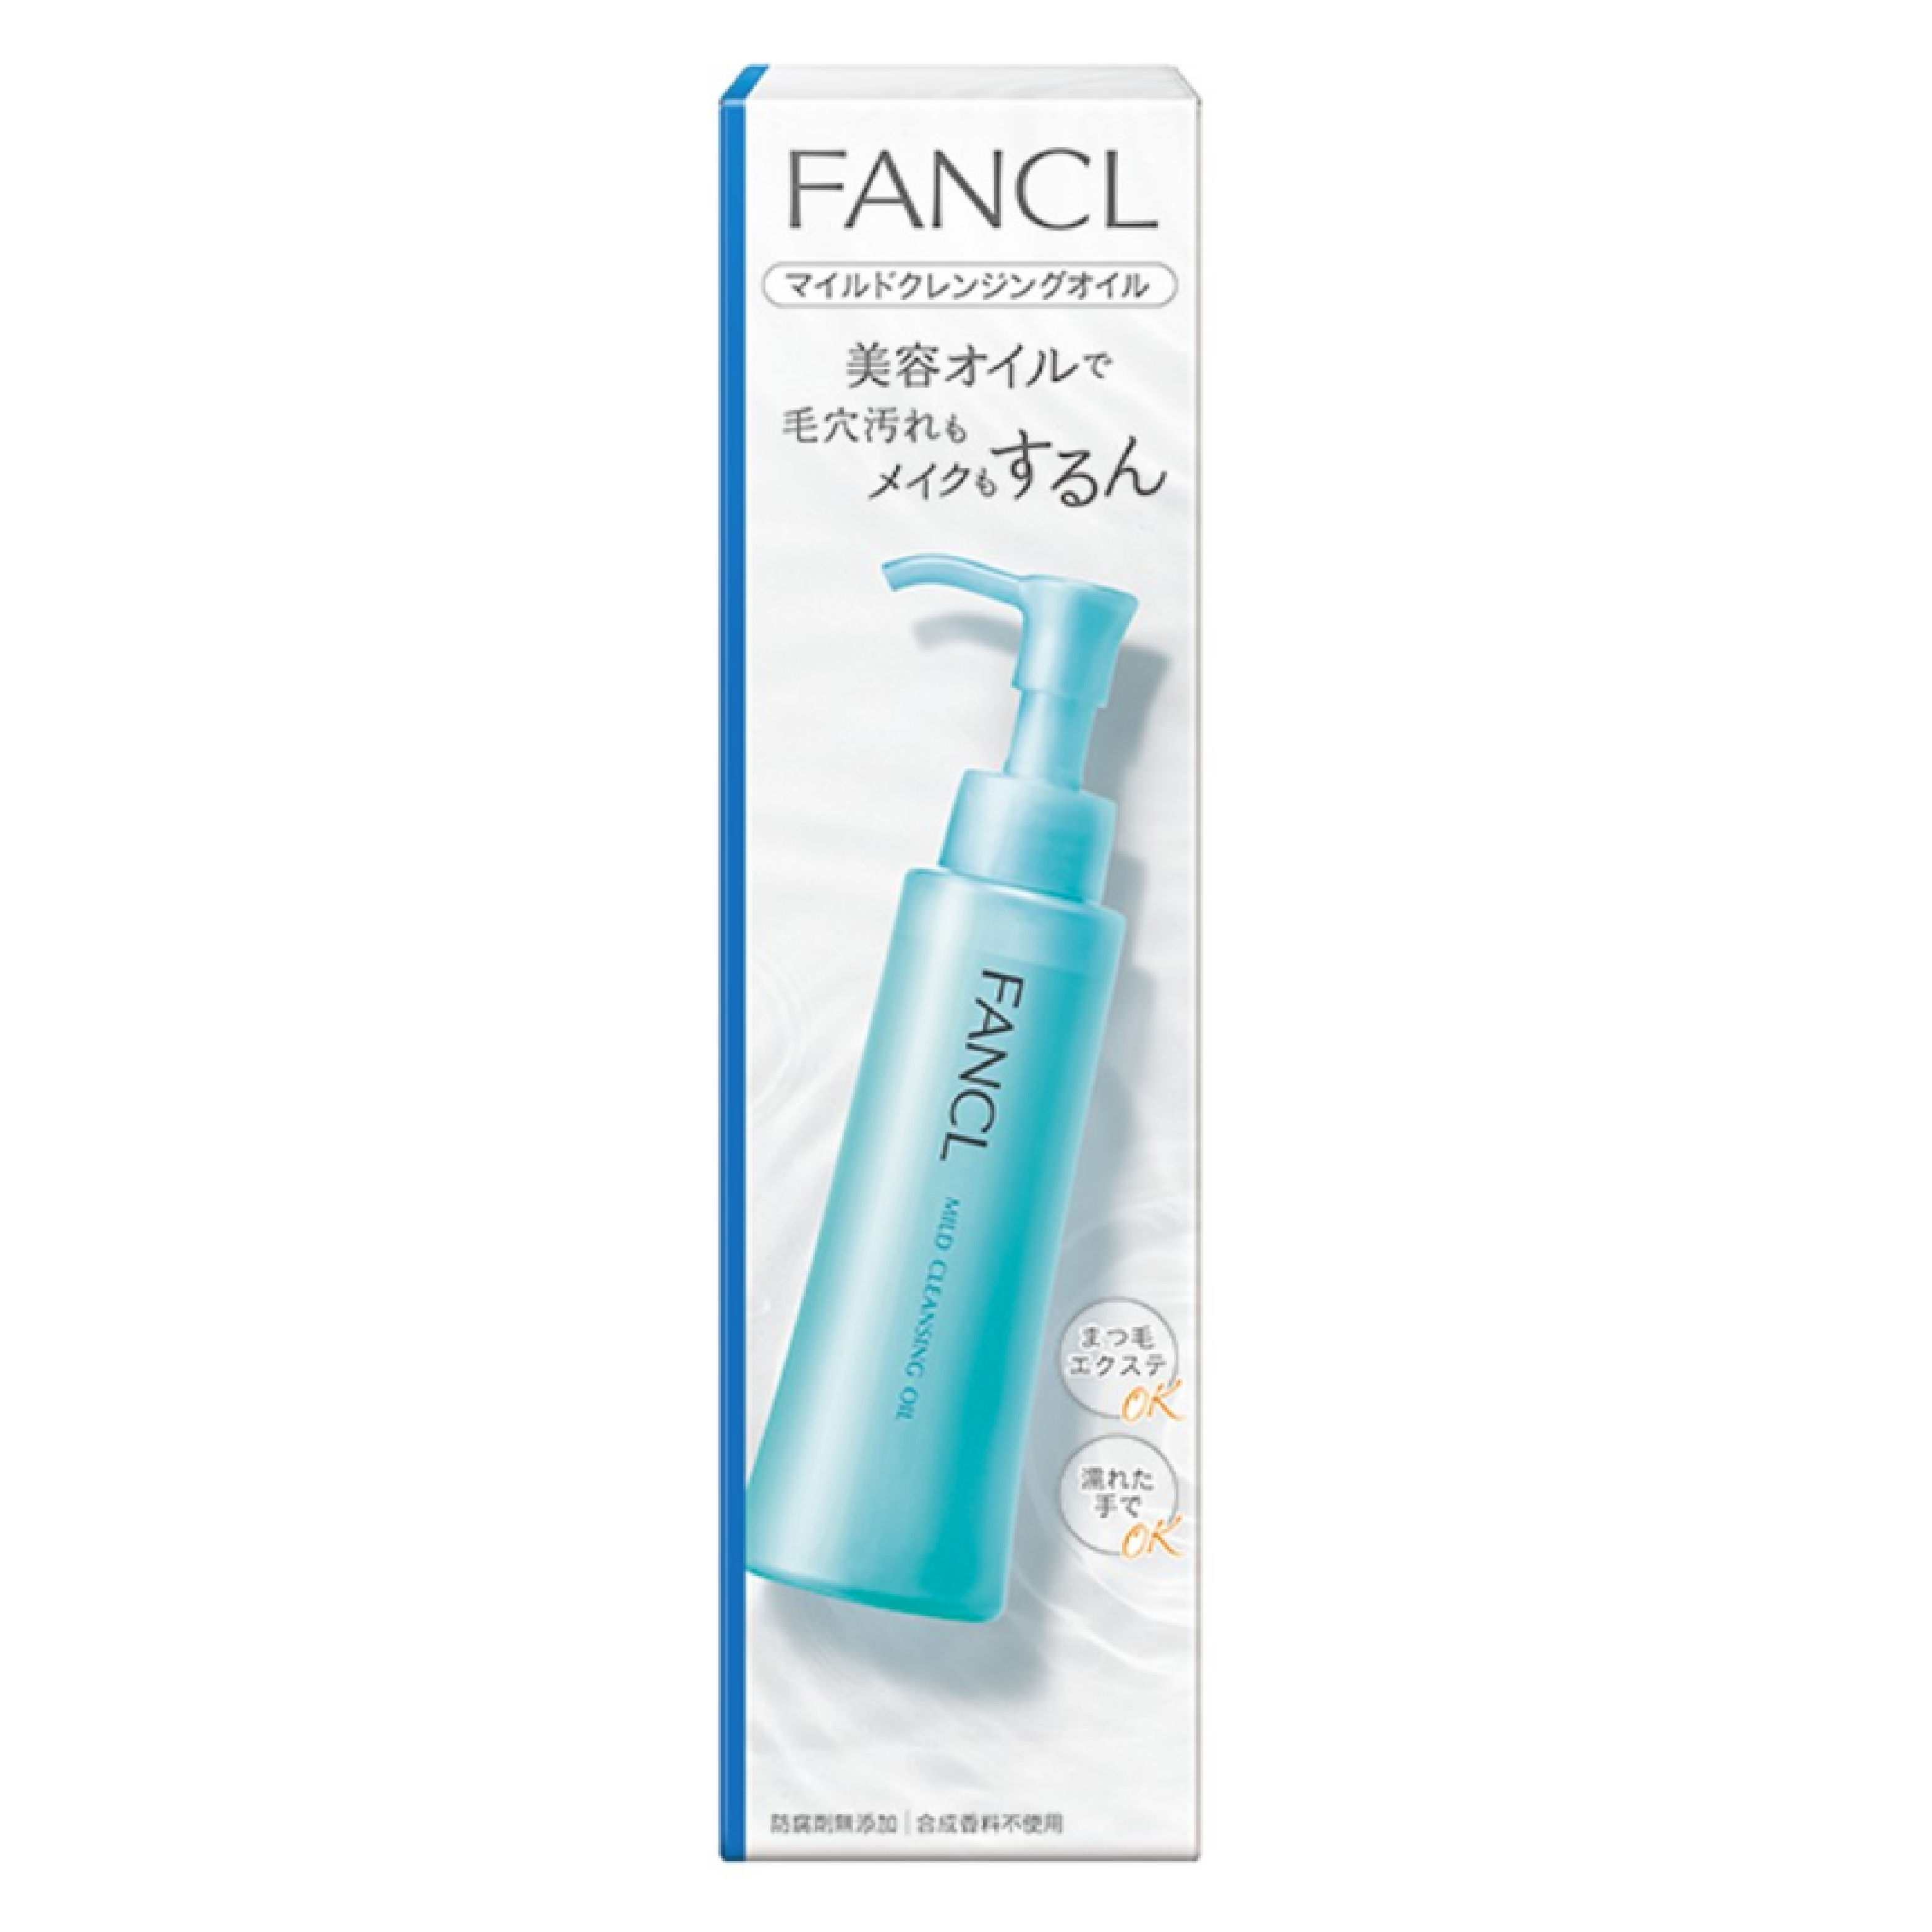 FANCL FANCL 溫和卸妝油 120ml